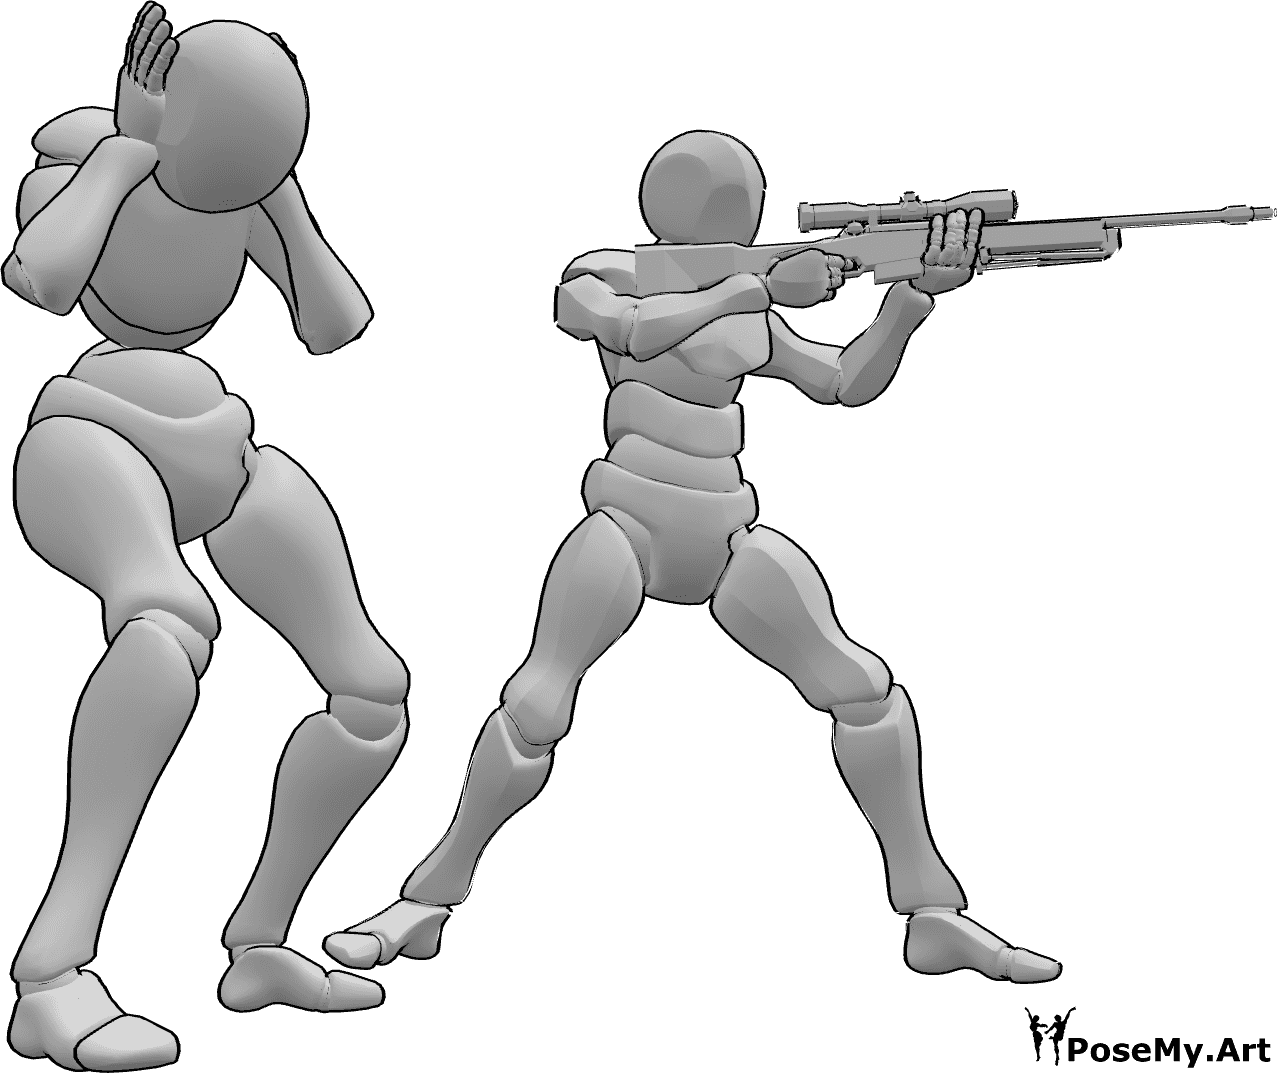 Referencia de poses- Postura de disparo masculina femenina - El macho dispara y el macho se asusta